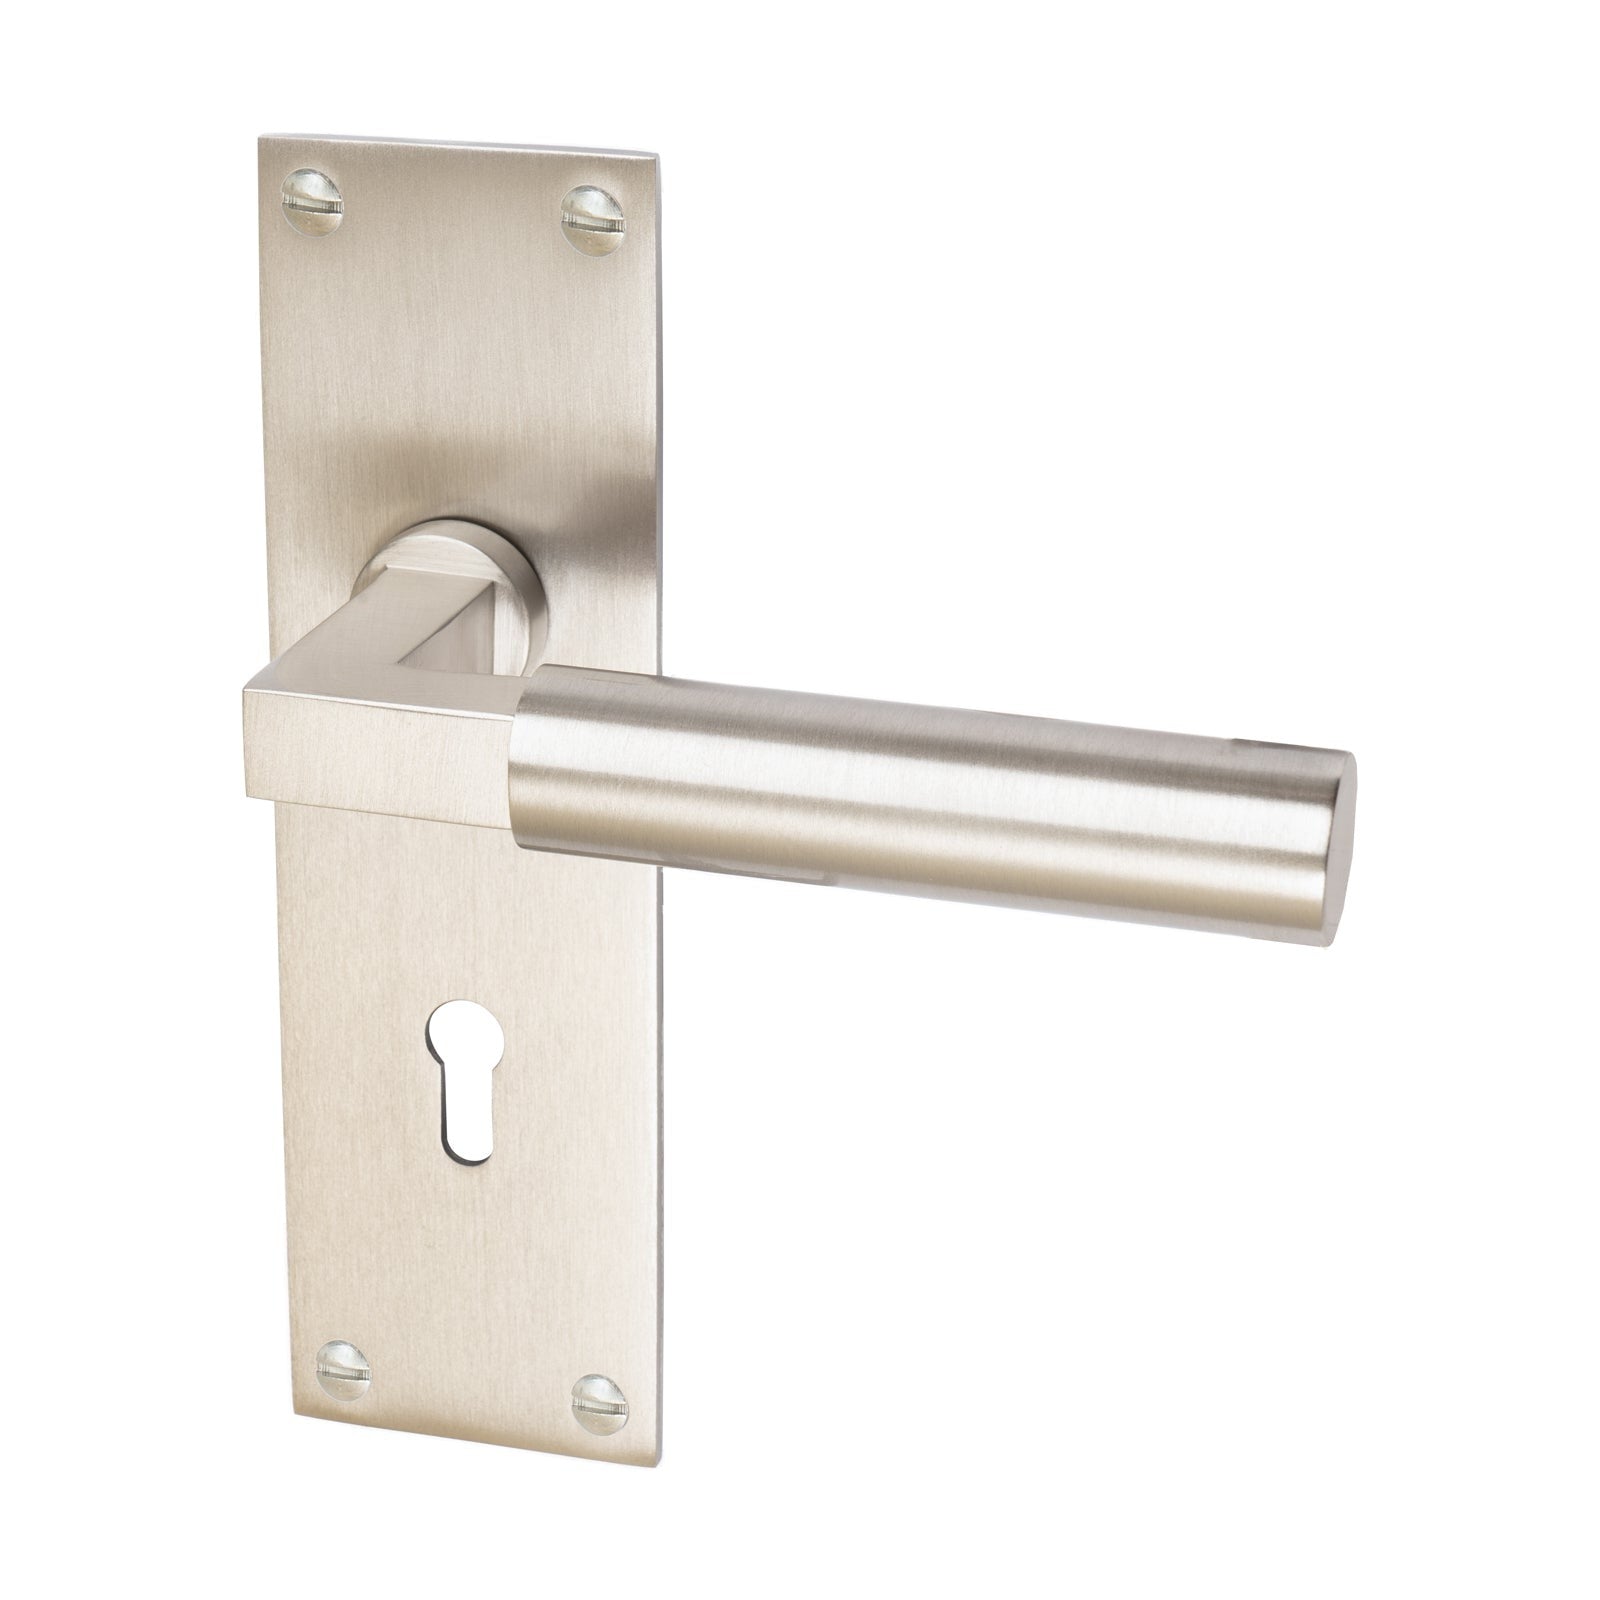 Bauhaus Door Handles On Plate Lock Handle in Satin Nickel 